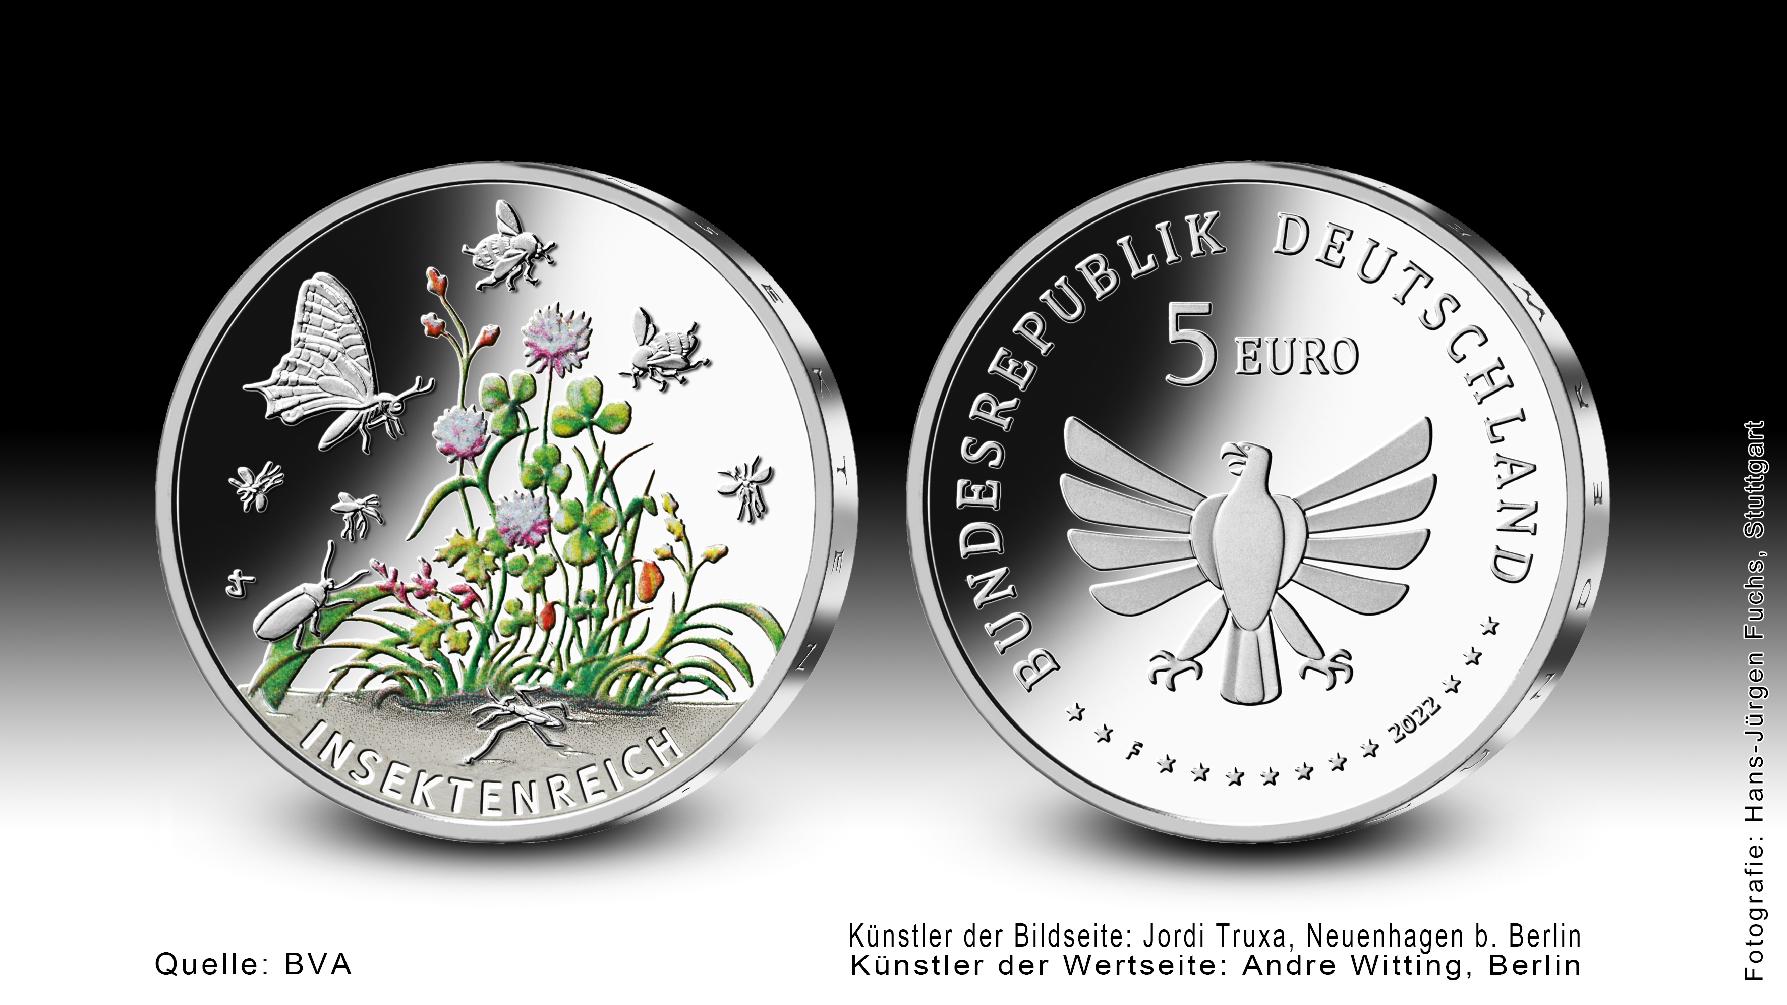  Abgebildet ist die Sammlermünze "Insektenreich" mit Farbe. Die Bildseite zeigt einen vielgestaltigen Lebensraum mit Wasser, Land und Luft sowie verschiedene Insekten.